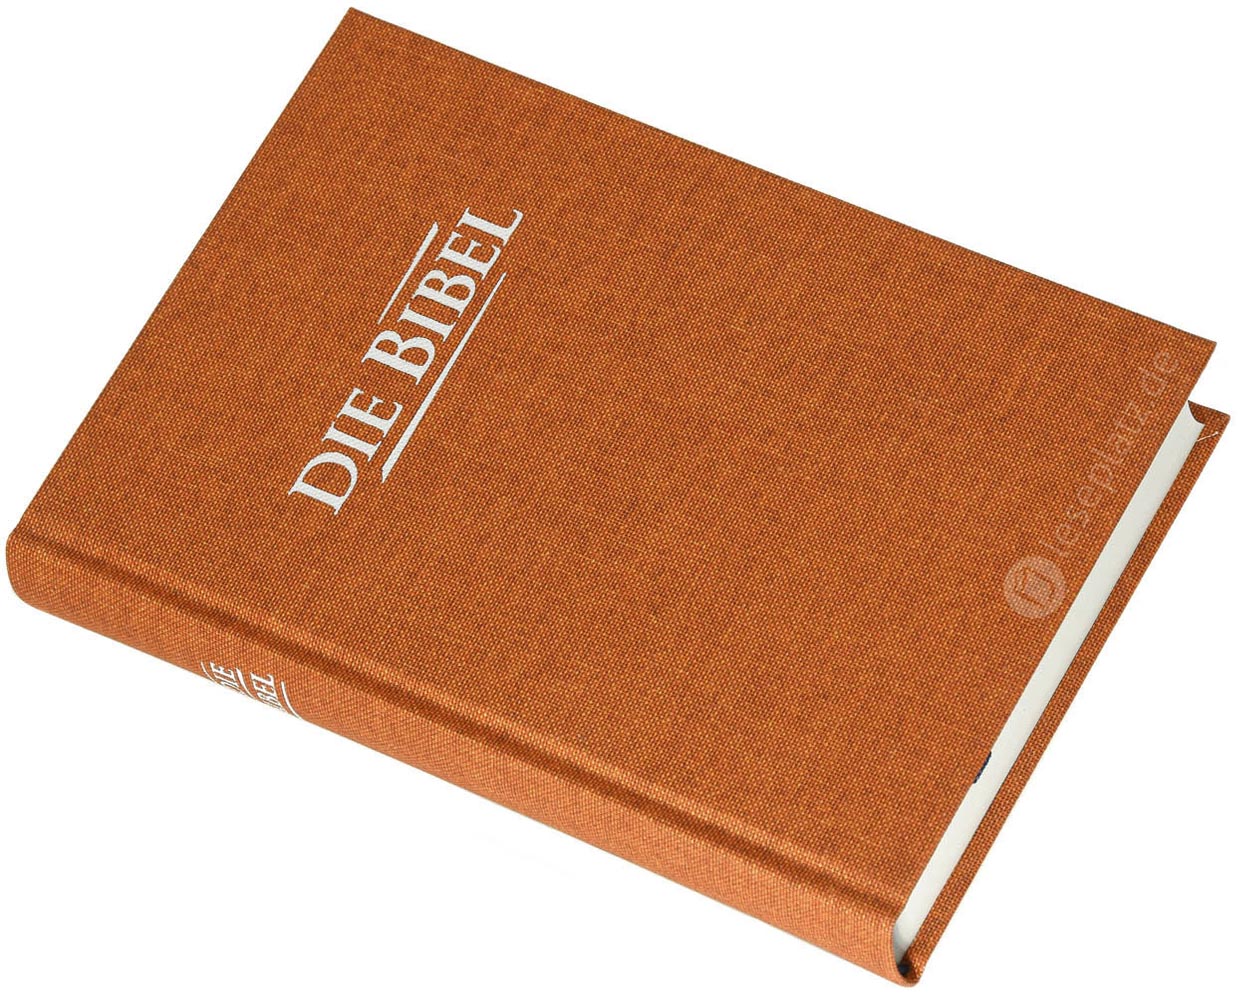 Elberfelder 2003 - Taschenausgabe / Hardcover Leinen ocker